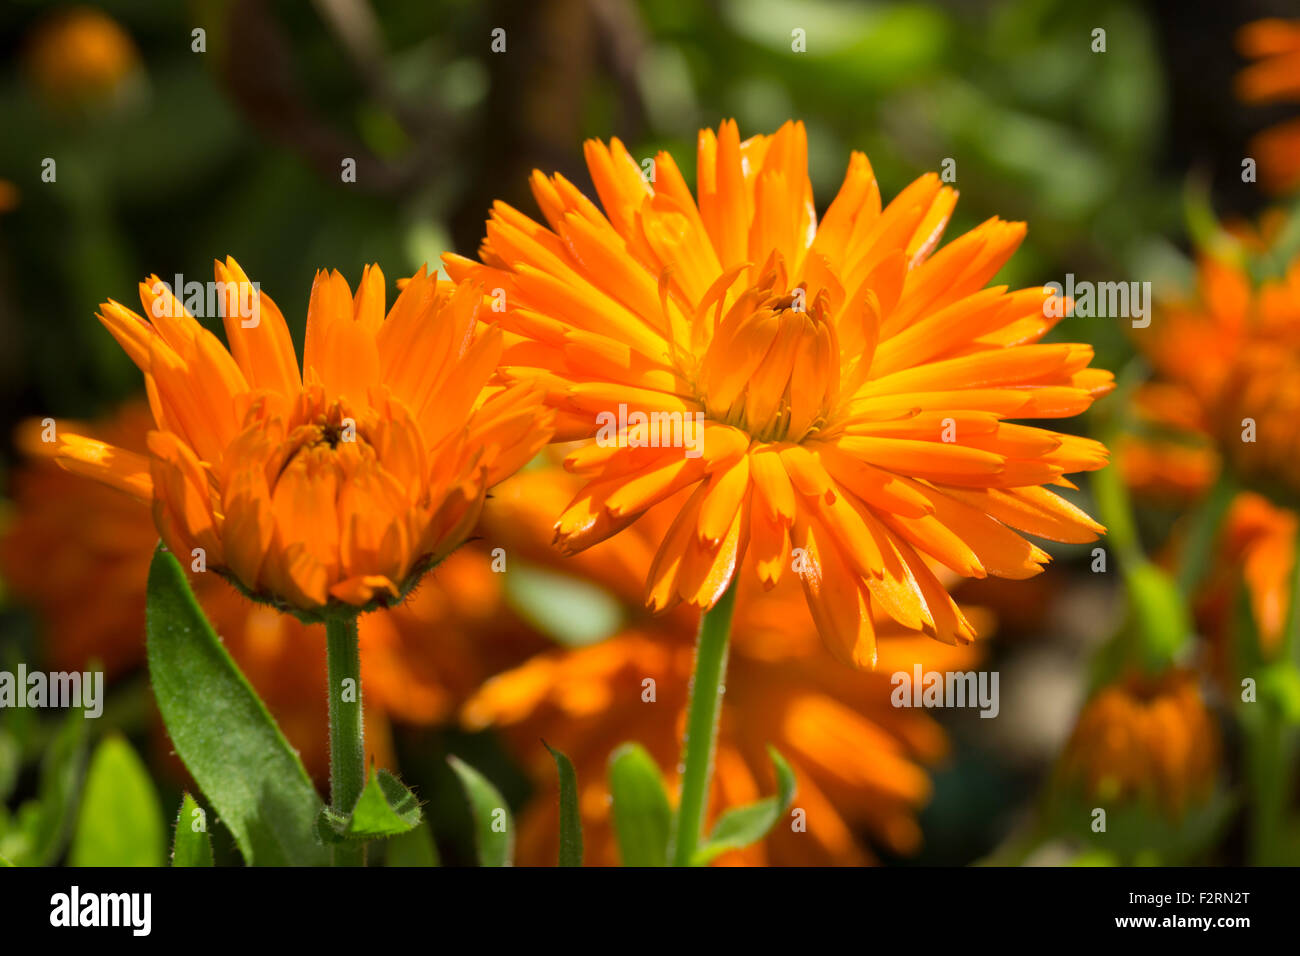 Leuchtend orange Blüten von der jährlichen Ringelblume Calendula Officinalis "Orange Stachelschwein" Stockfoto